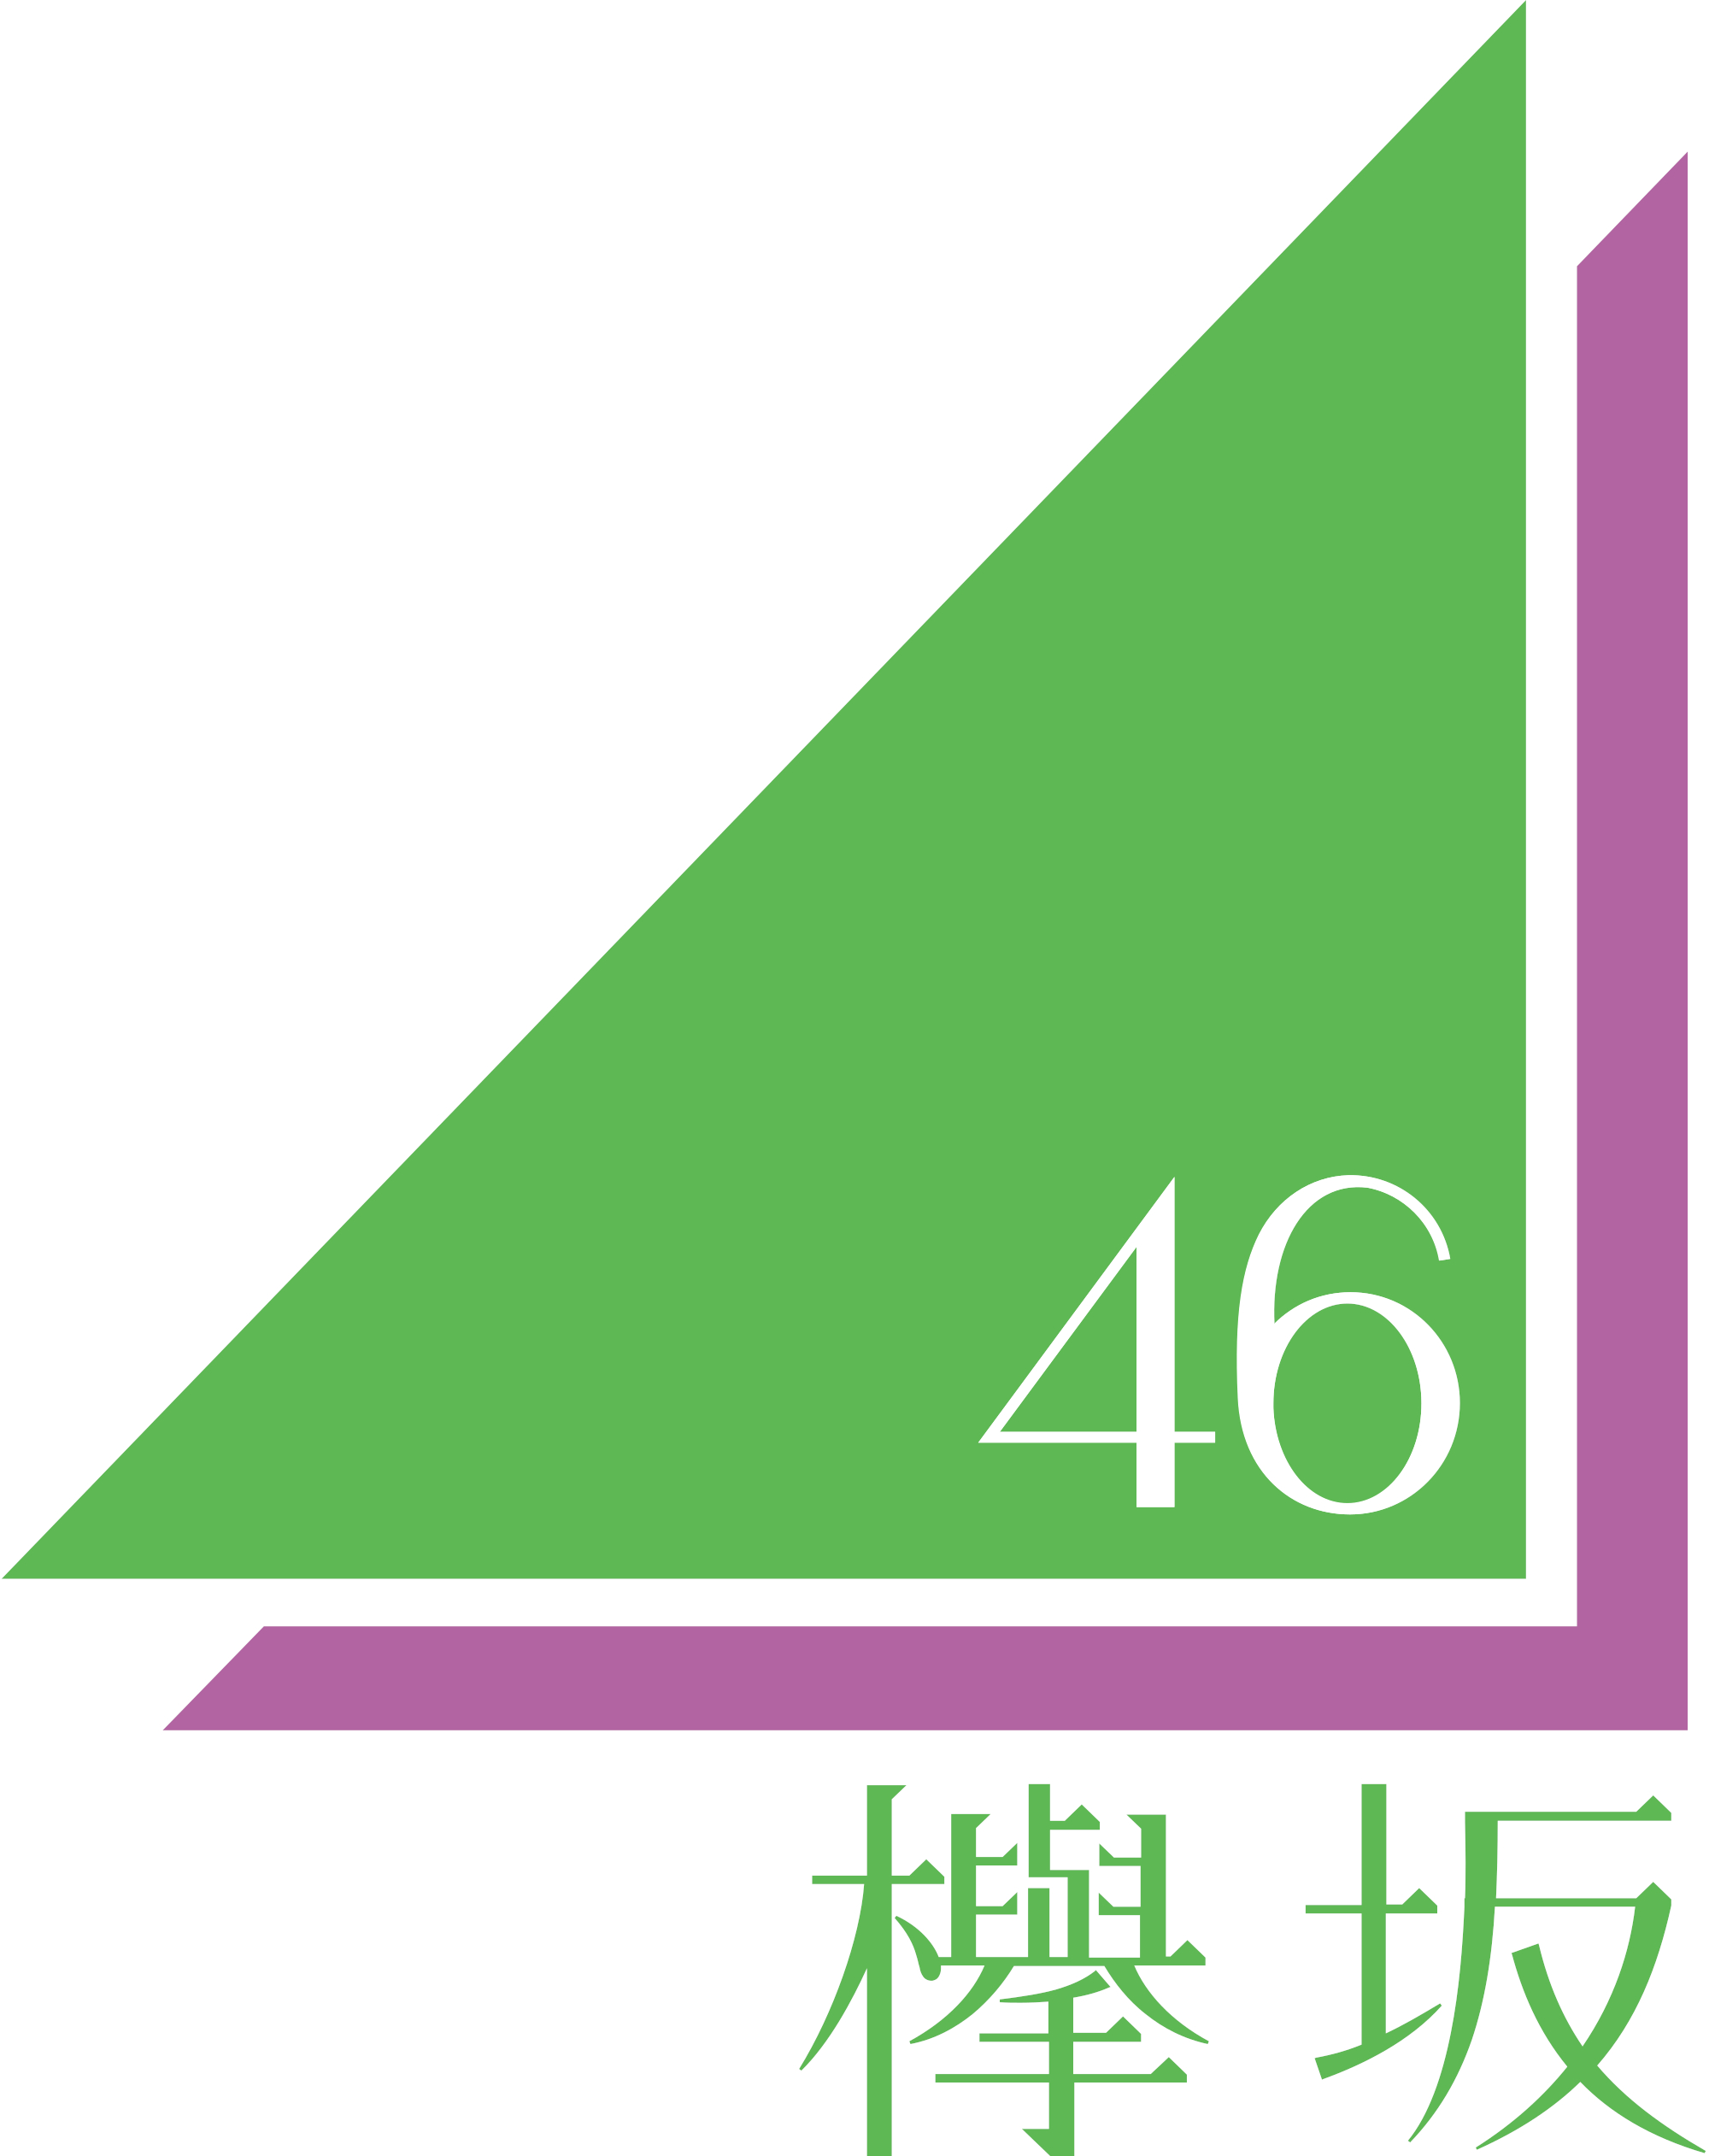 欅坂46 エケペディア